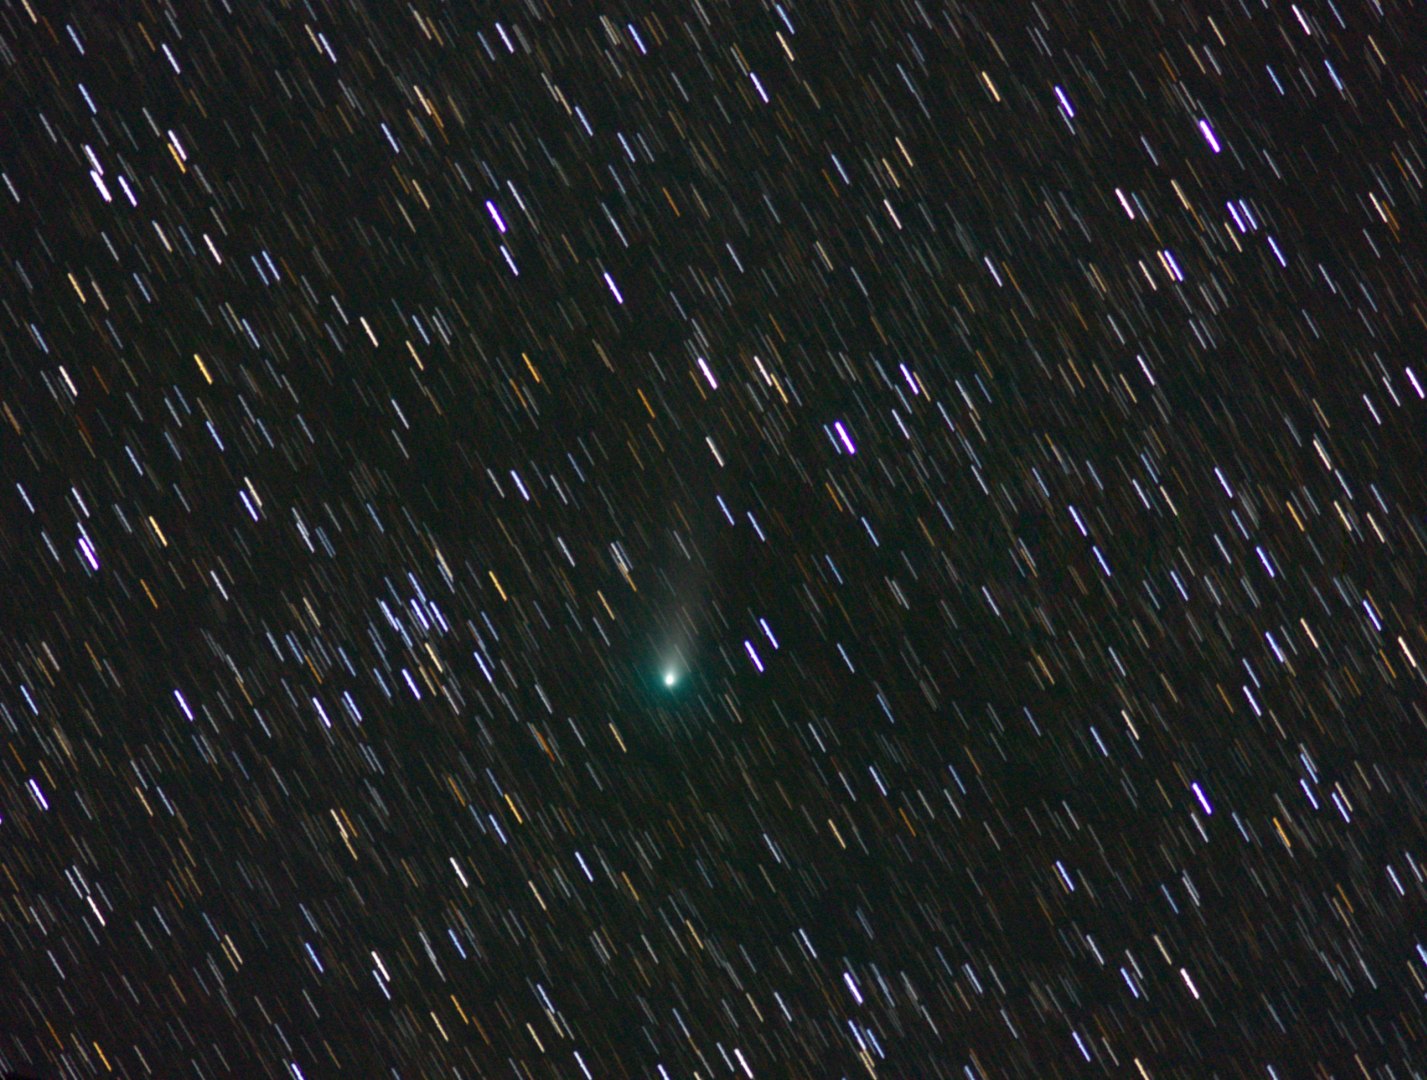 Komet 21P